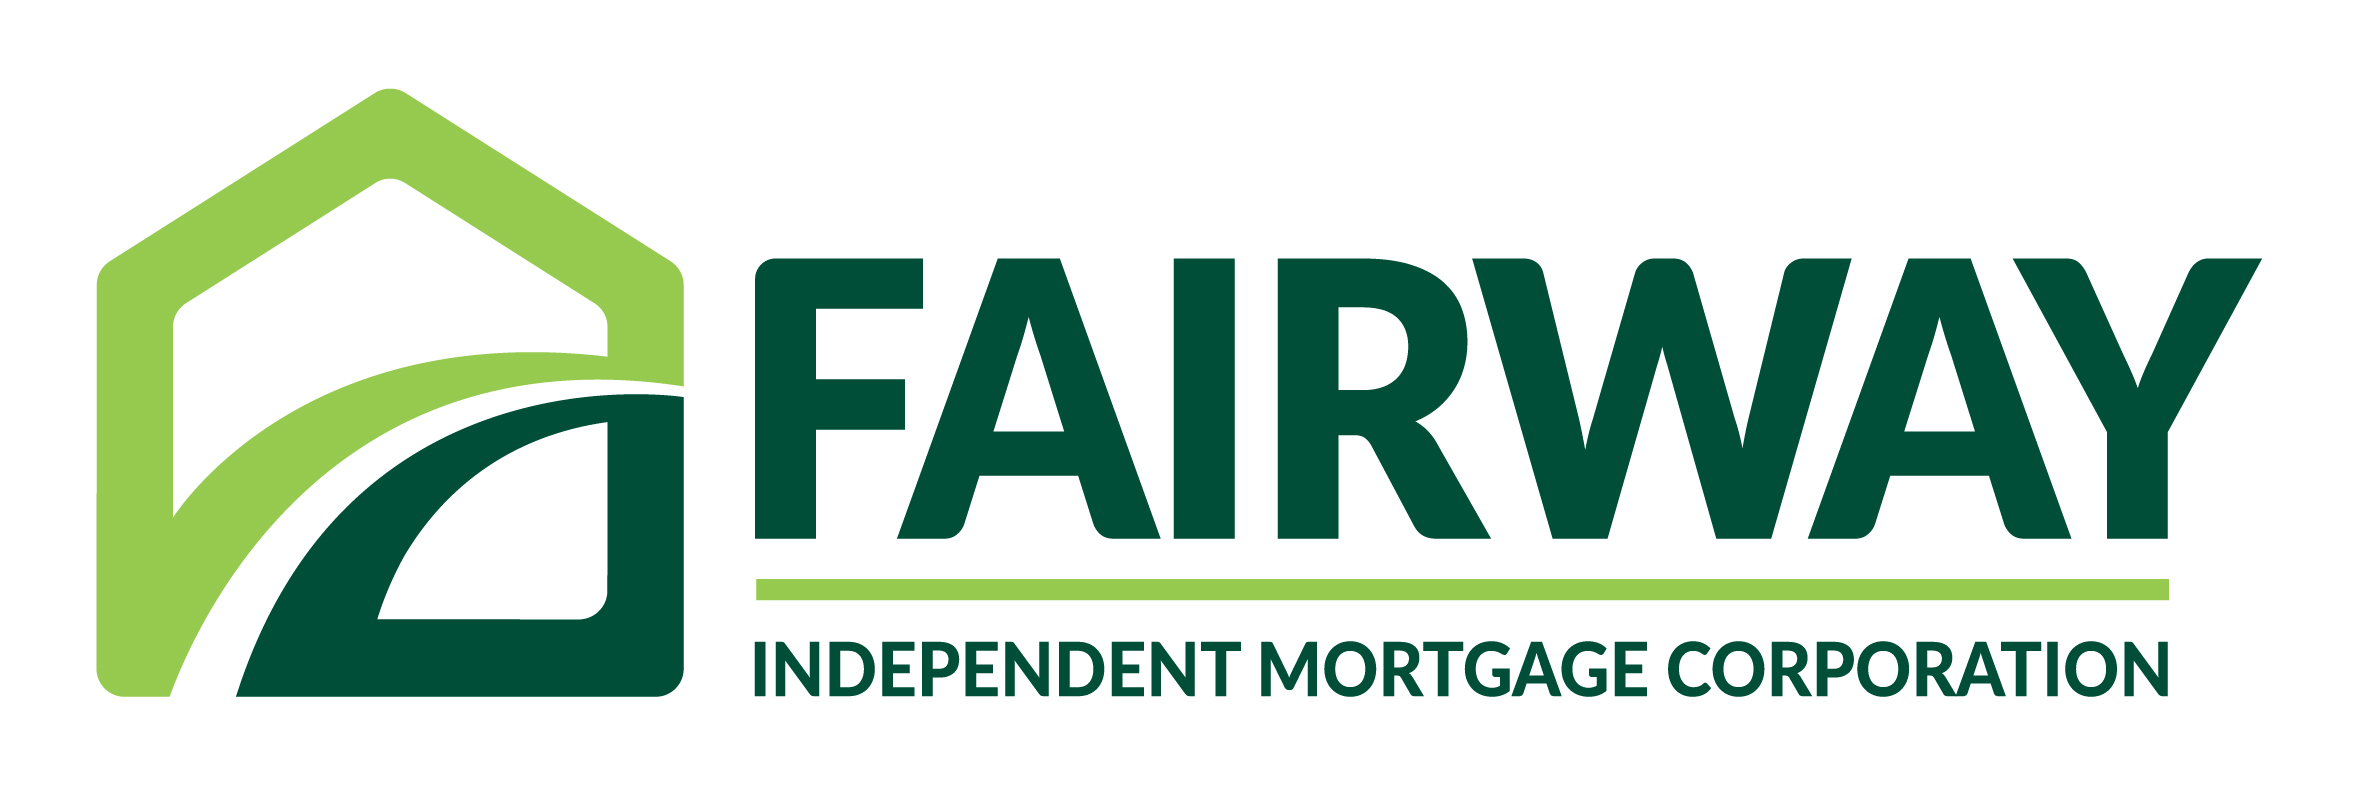 Fairway-Logo.jpg